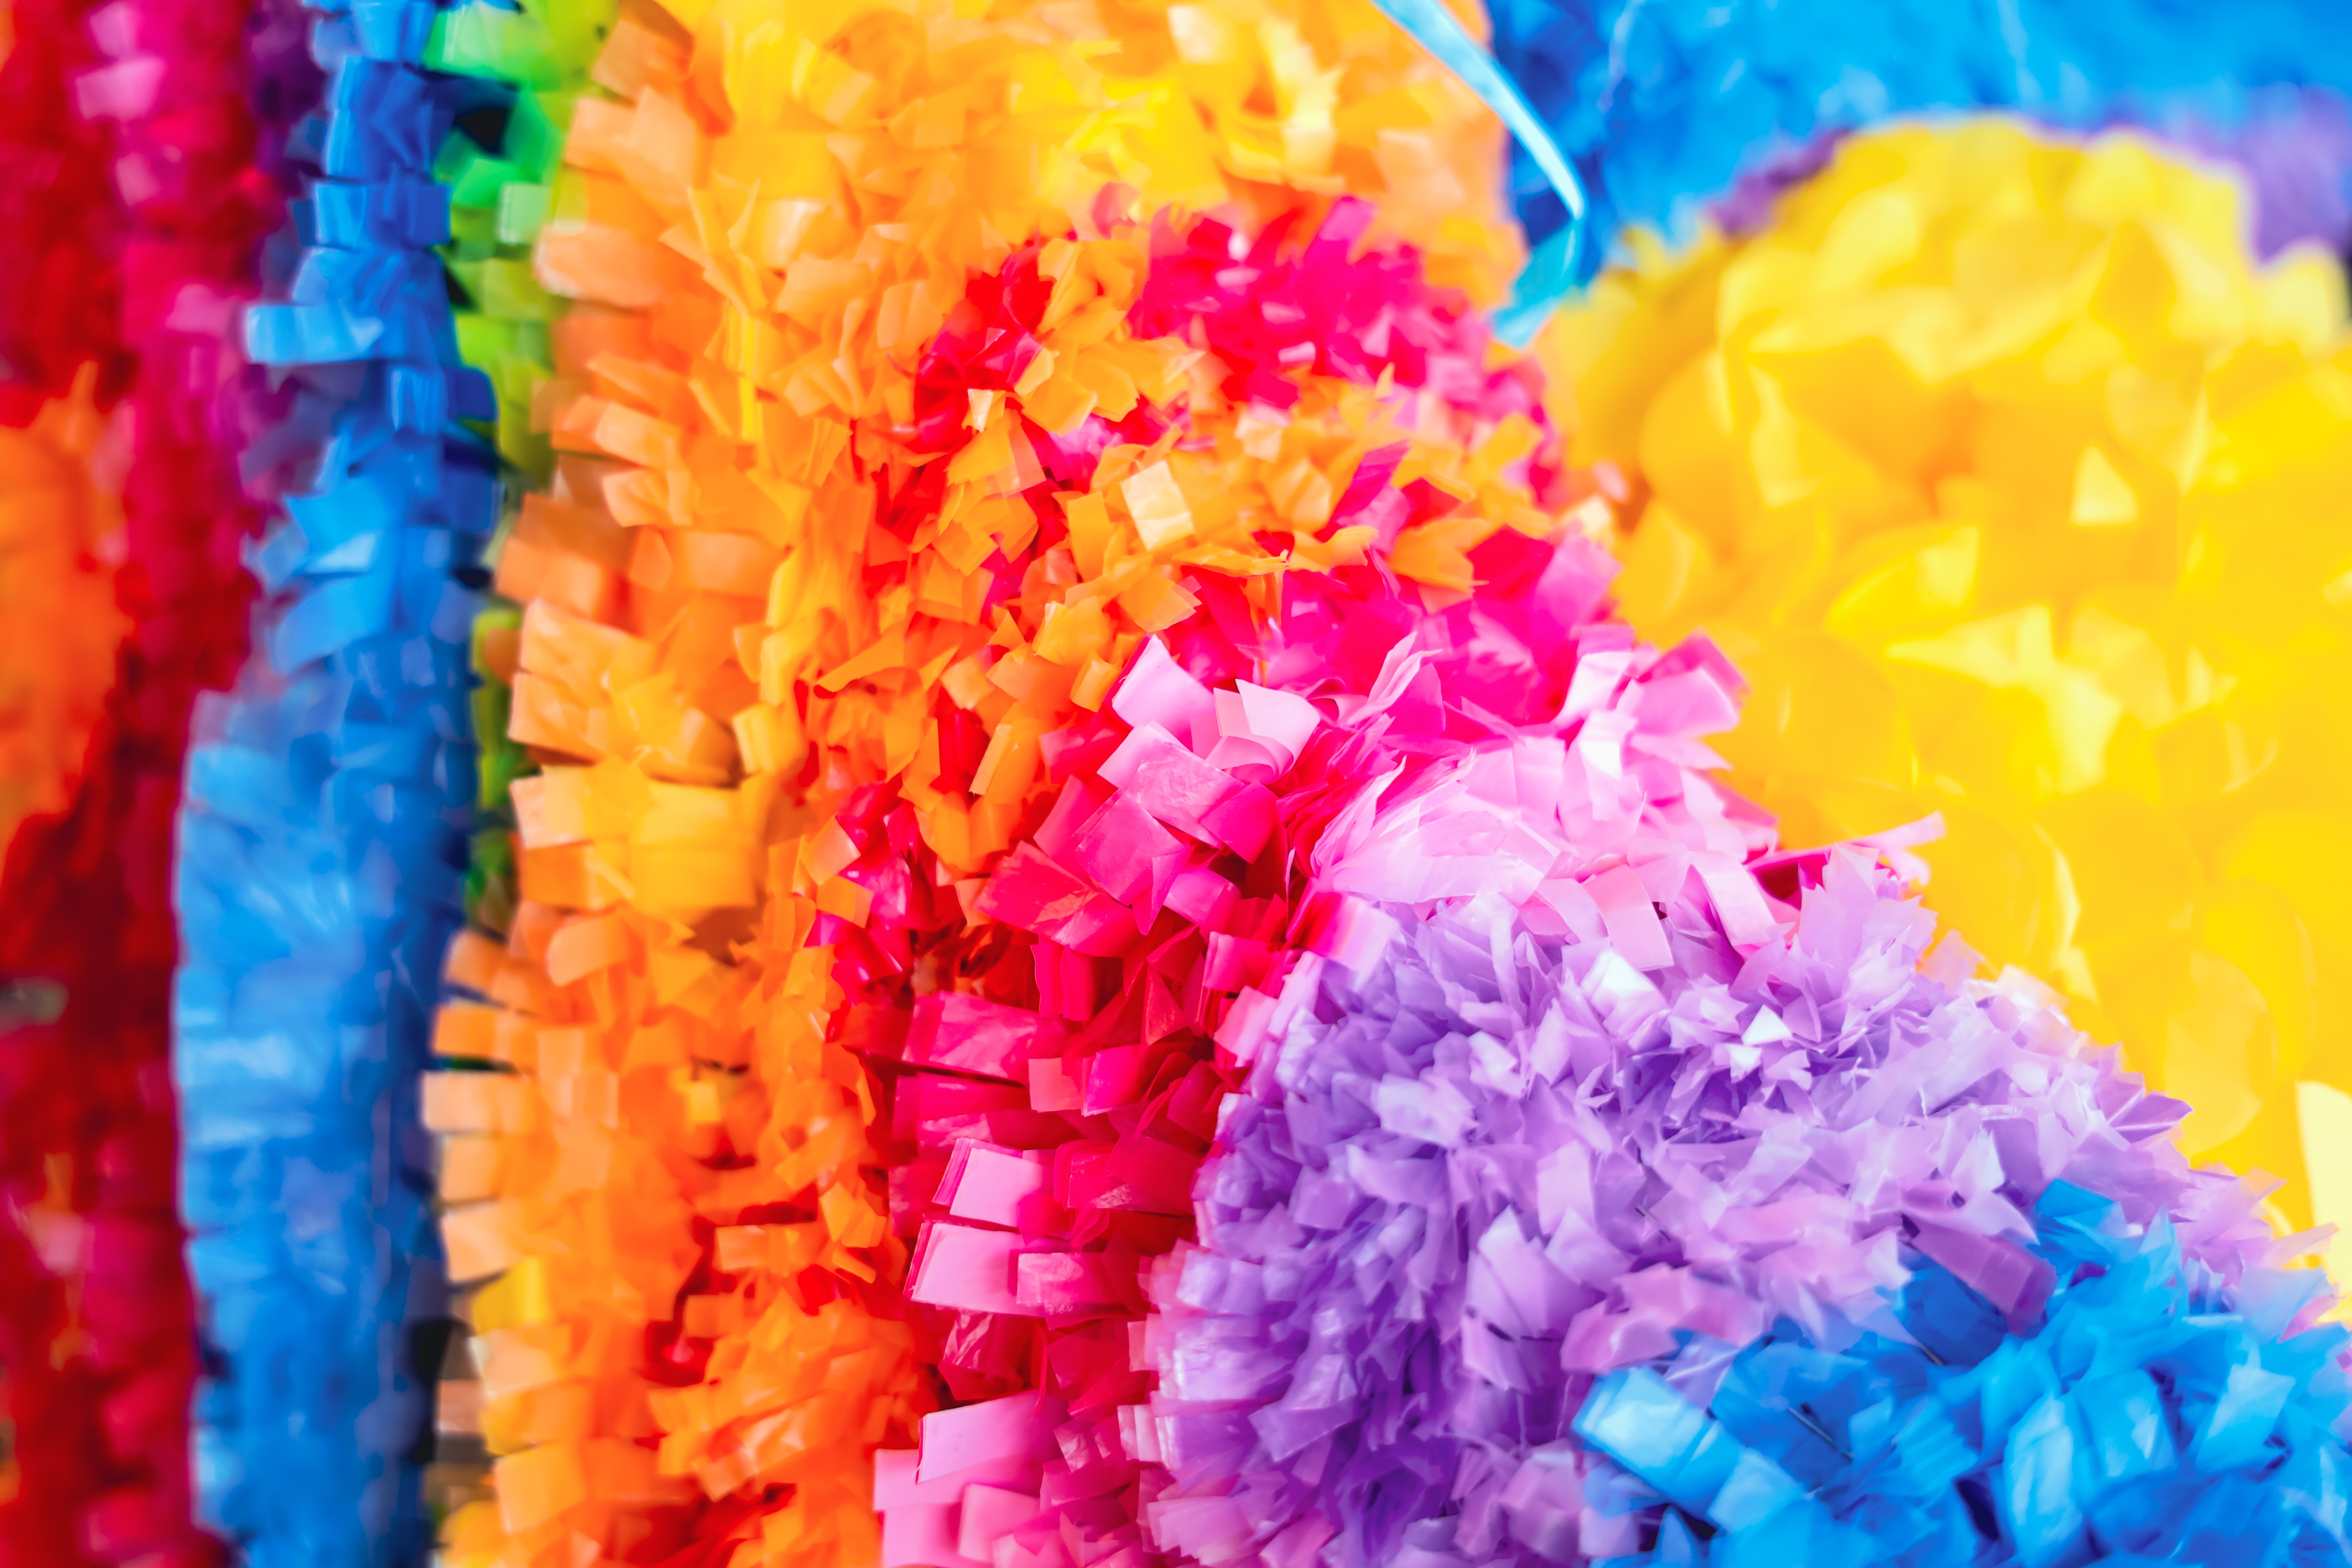 close-up photo of a colorful piñata